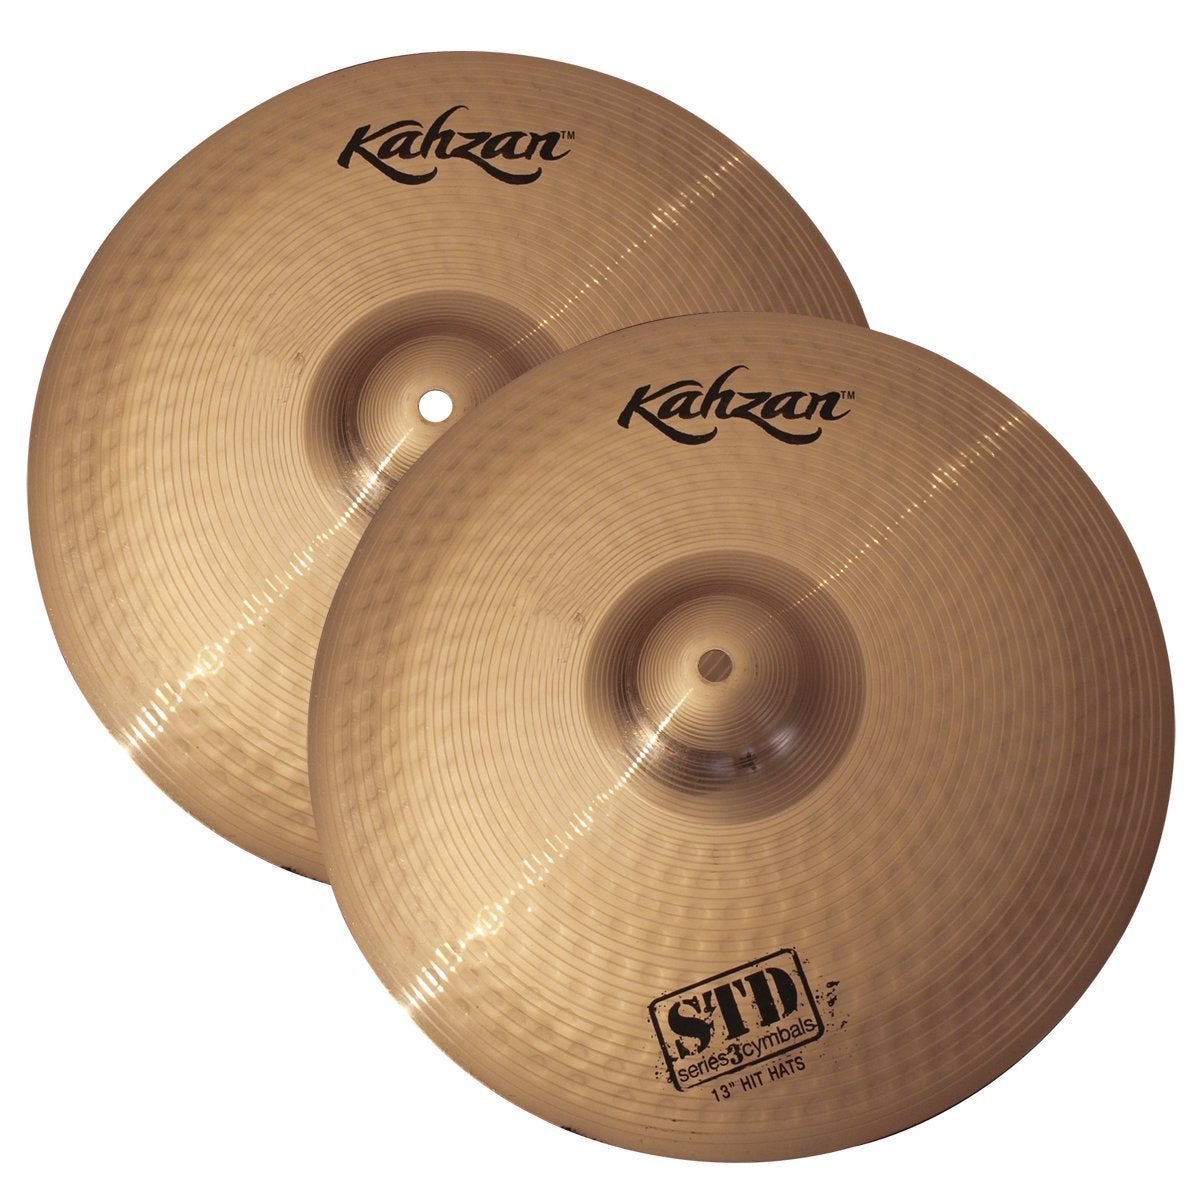 Kahzan 'STD-3 Series' Hi-Hat Cymbals (13")-KC-STD3-13HH